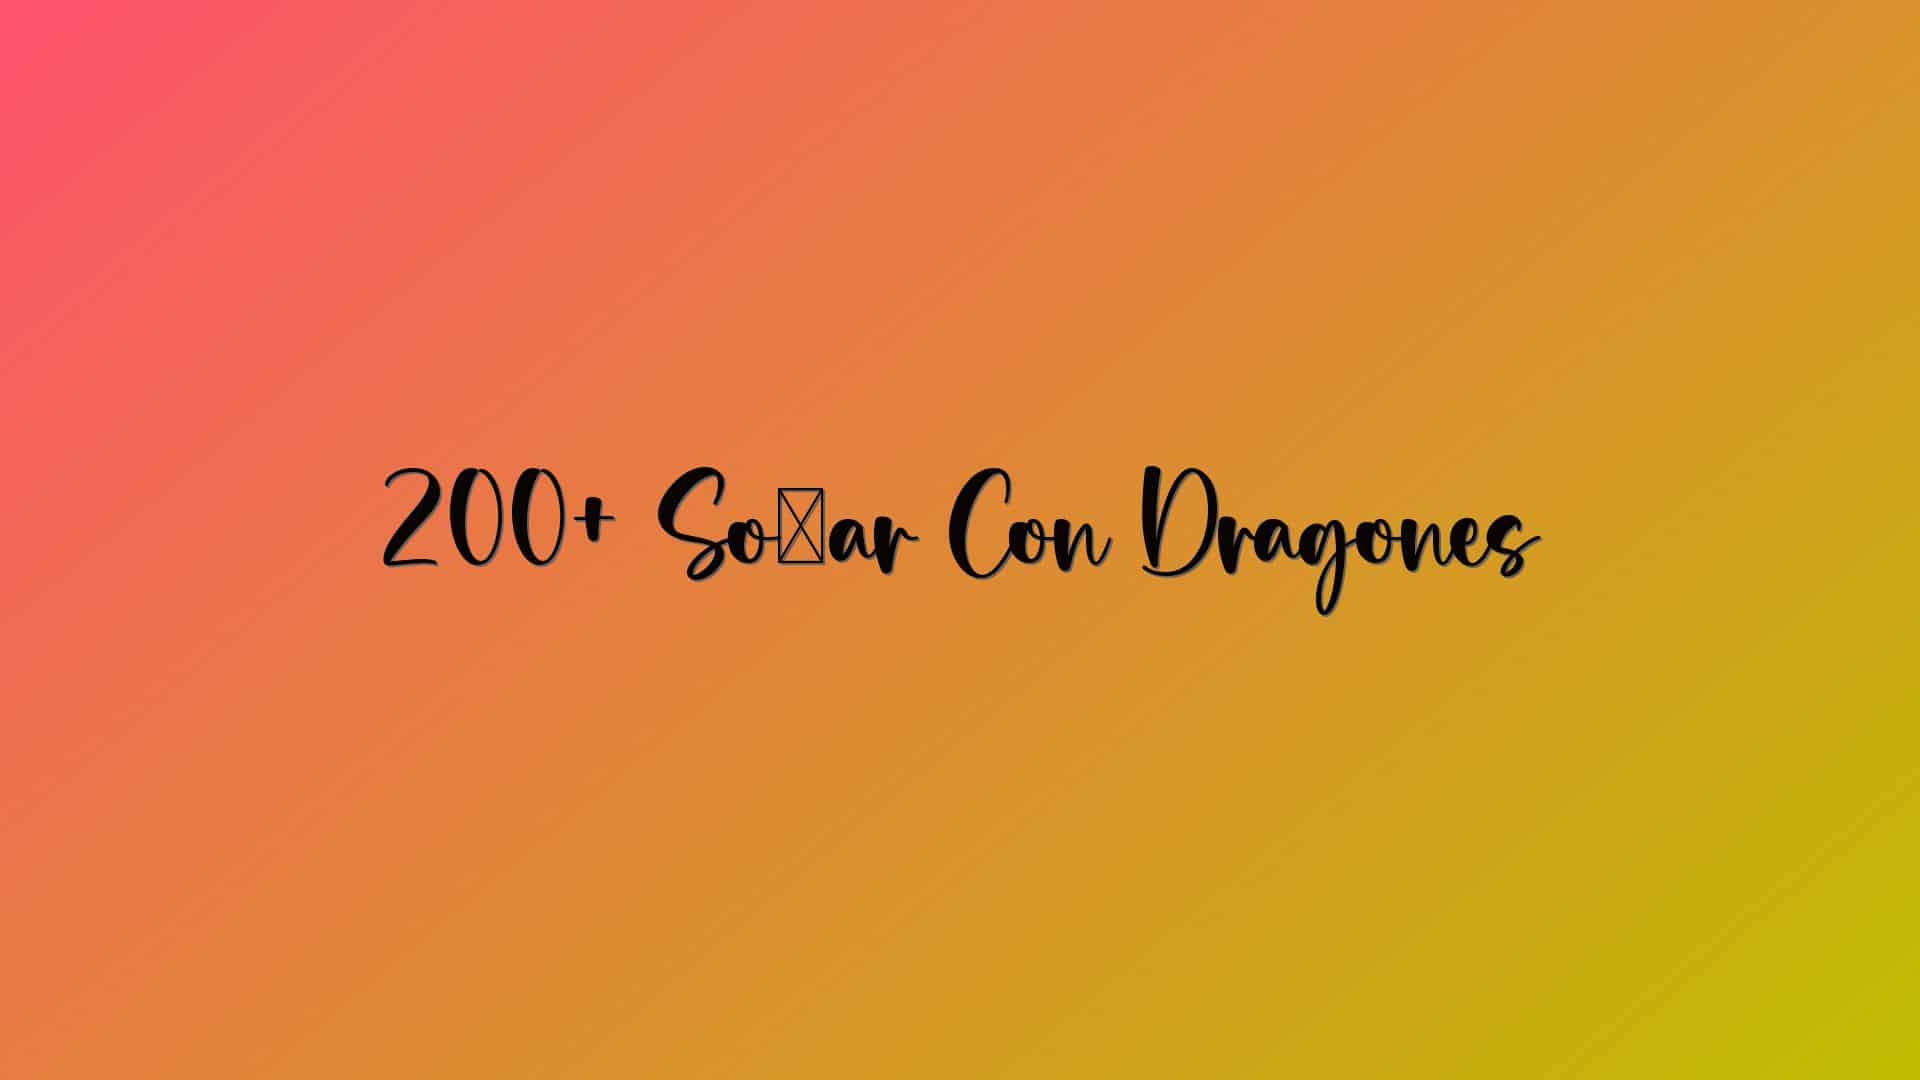 200+ Soñar Con Dragones